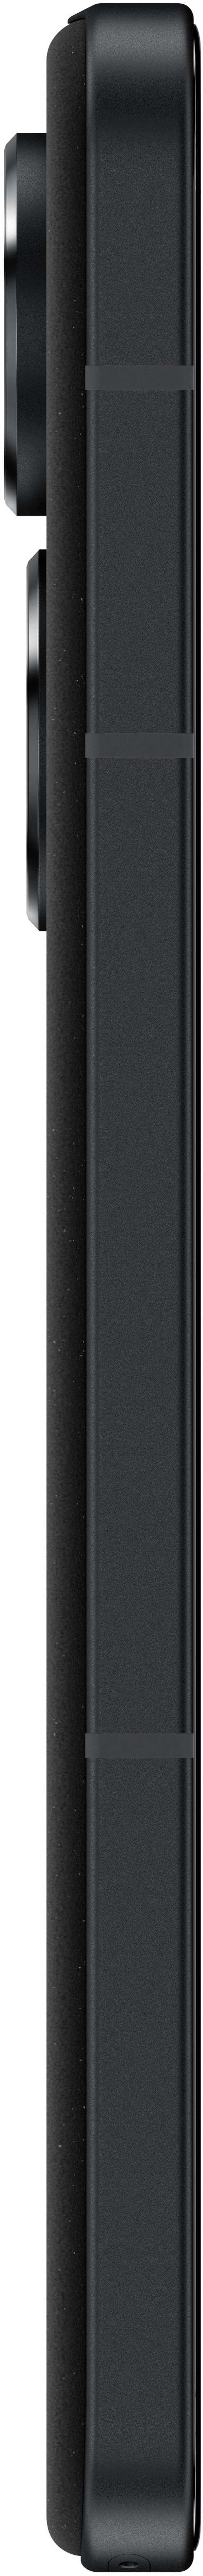 ASUS Zenfone 10 128GB Musta